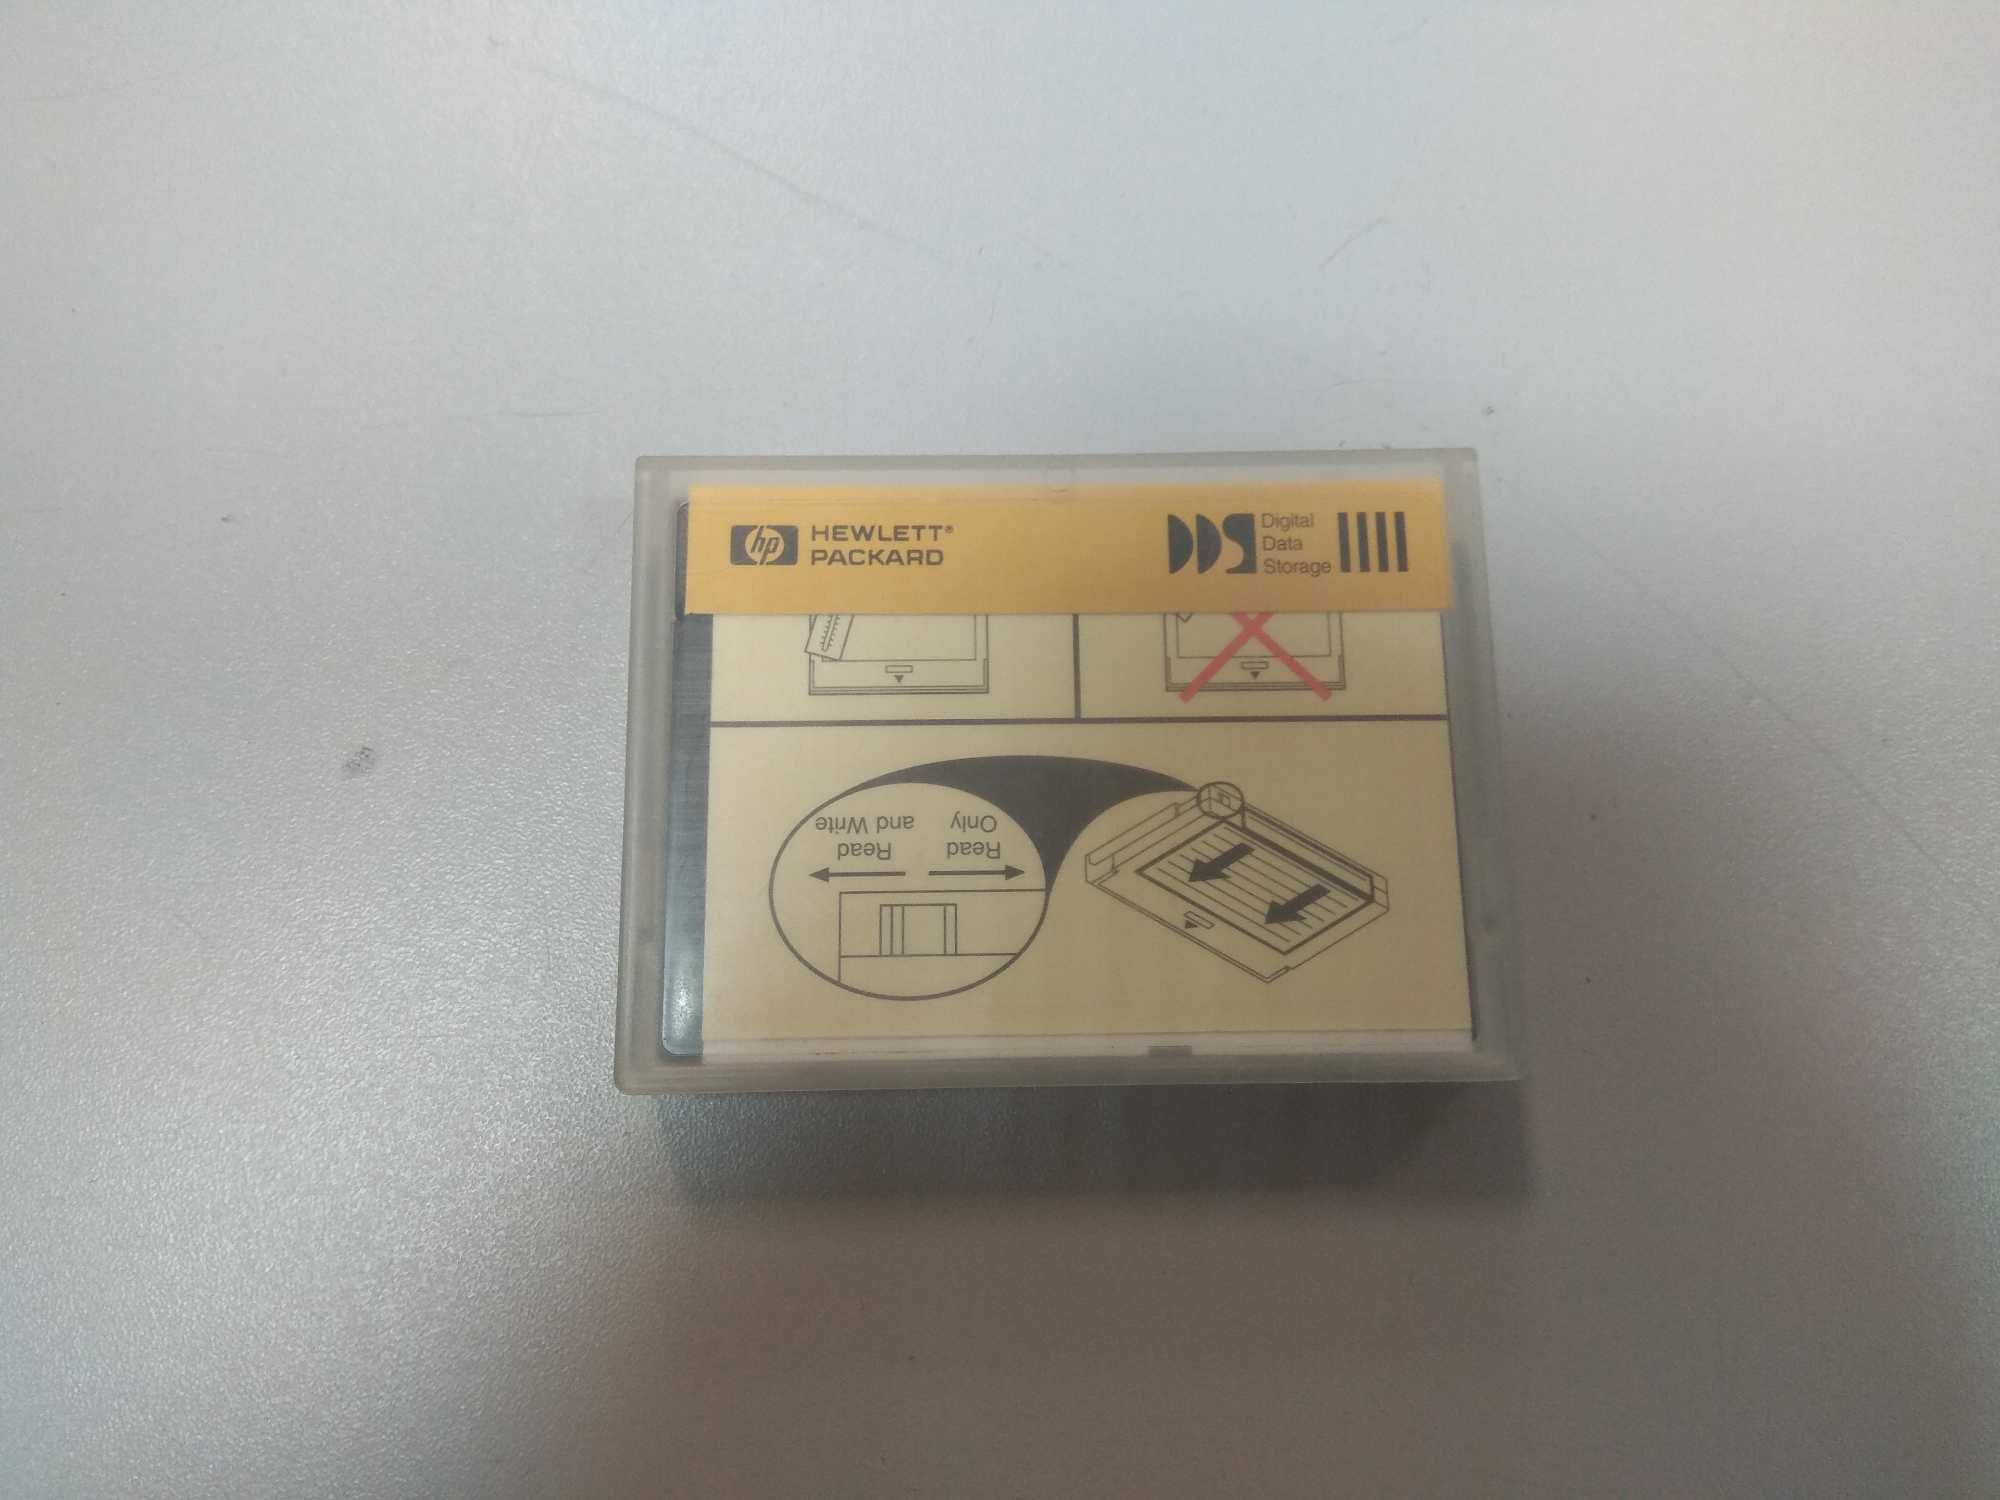 Кассета HP DDS-1 90 meter Data Tape Cartridge